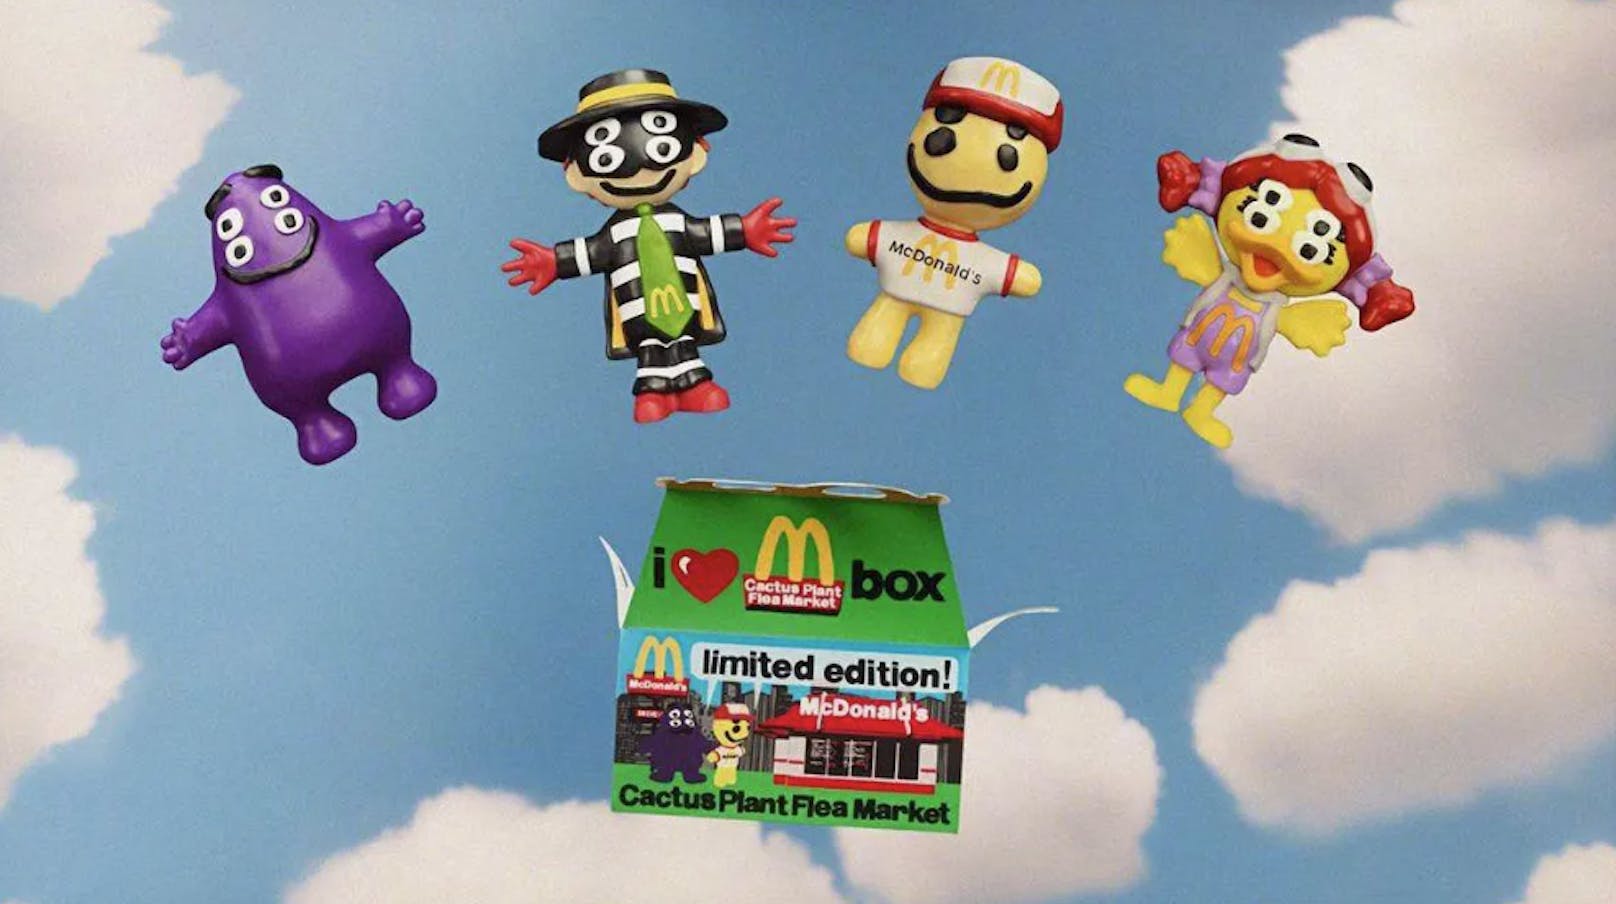 Die Limited Edition von McDonald’s kommt mit den altbekannten Maskottchen des Fastfood-Restaurants und einer neuen Figur: Grimace, Hamburglar, Cactus Buddy und Birdie.